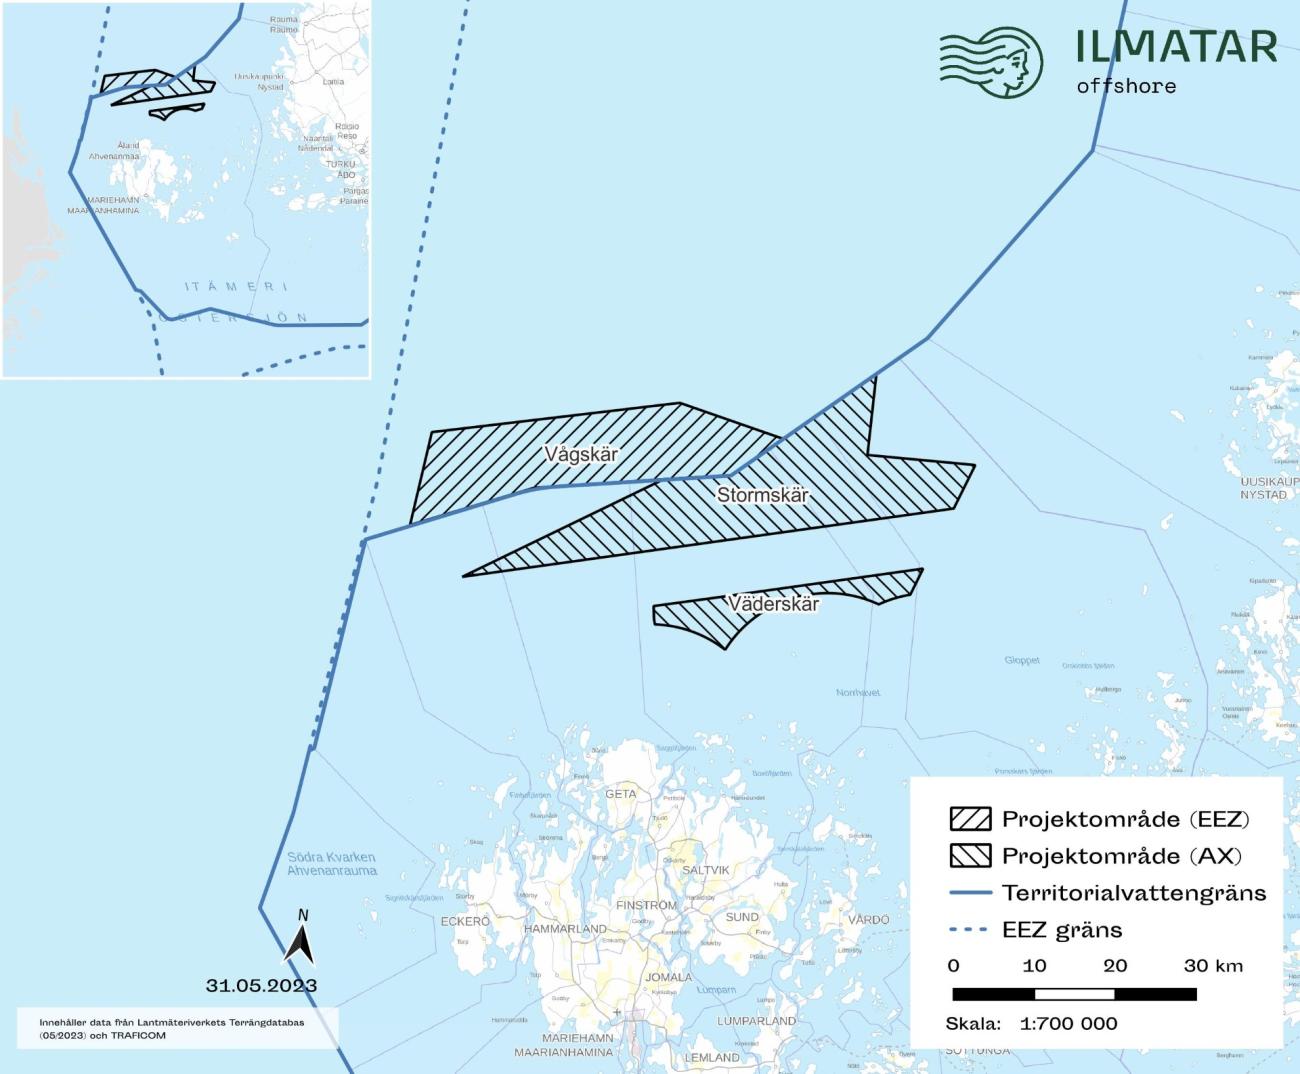 Nyligen meddelade Ilmatar att Finlands statsråd har beviljat undersökningstillstånd för ett nytt vindkraftområde. Man kallar området Vågskär, och det ligger utanför gränsen för åländskt territorialvatten. 
Bilden kommer från företagets pressinformation. 